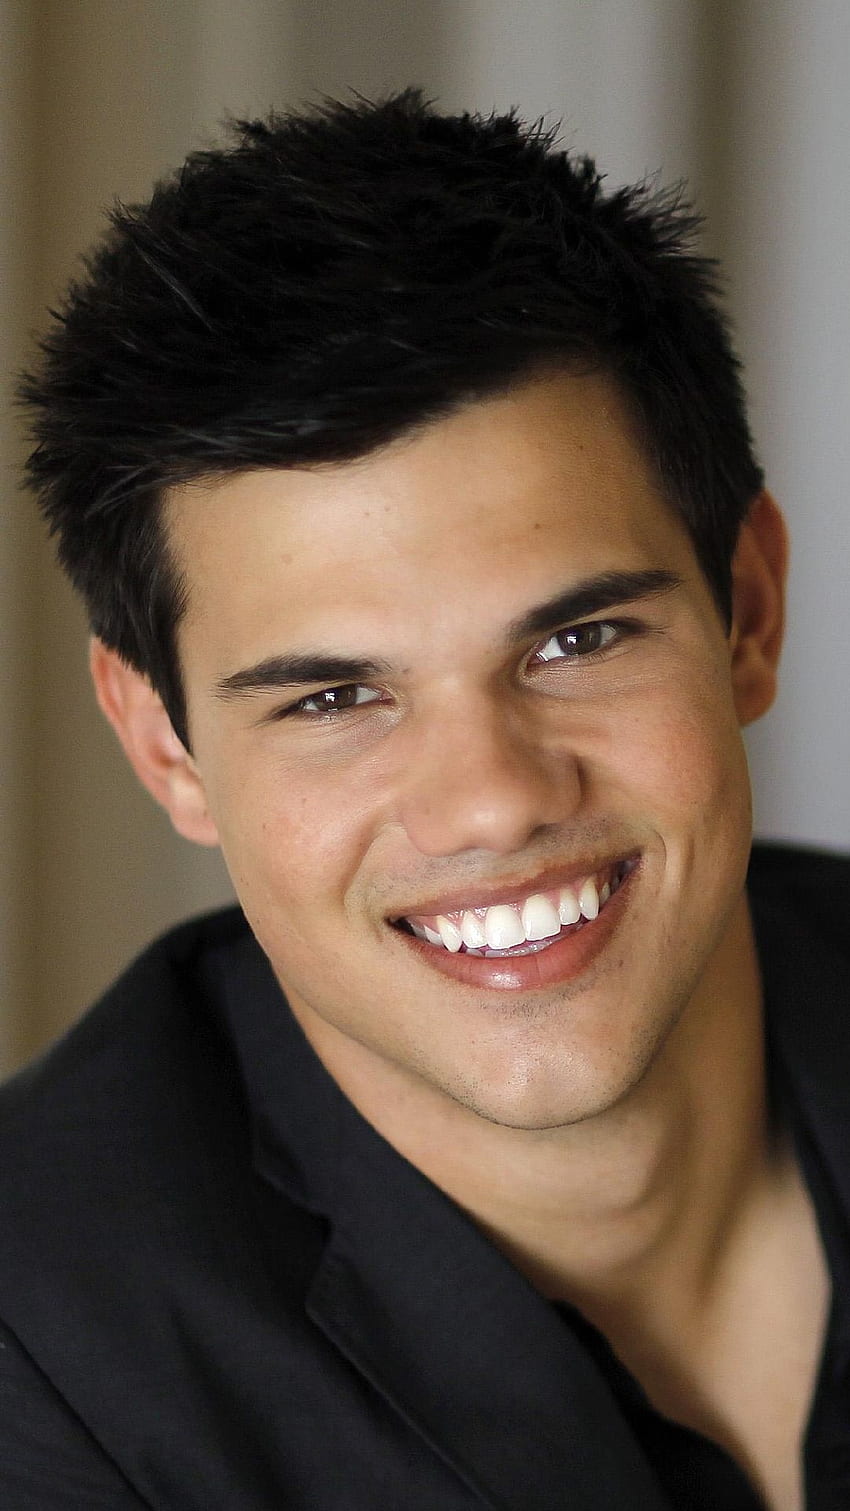 iPhone Taylor Lautner smiling HD phone wallpaper